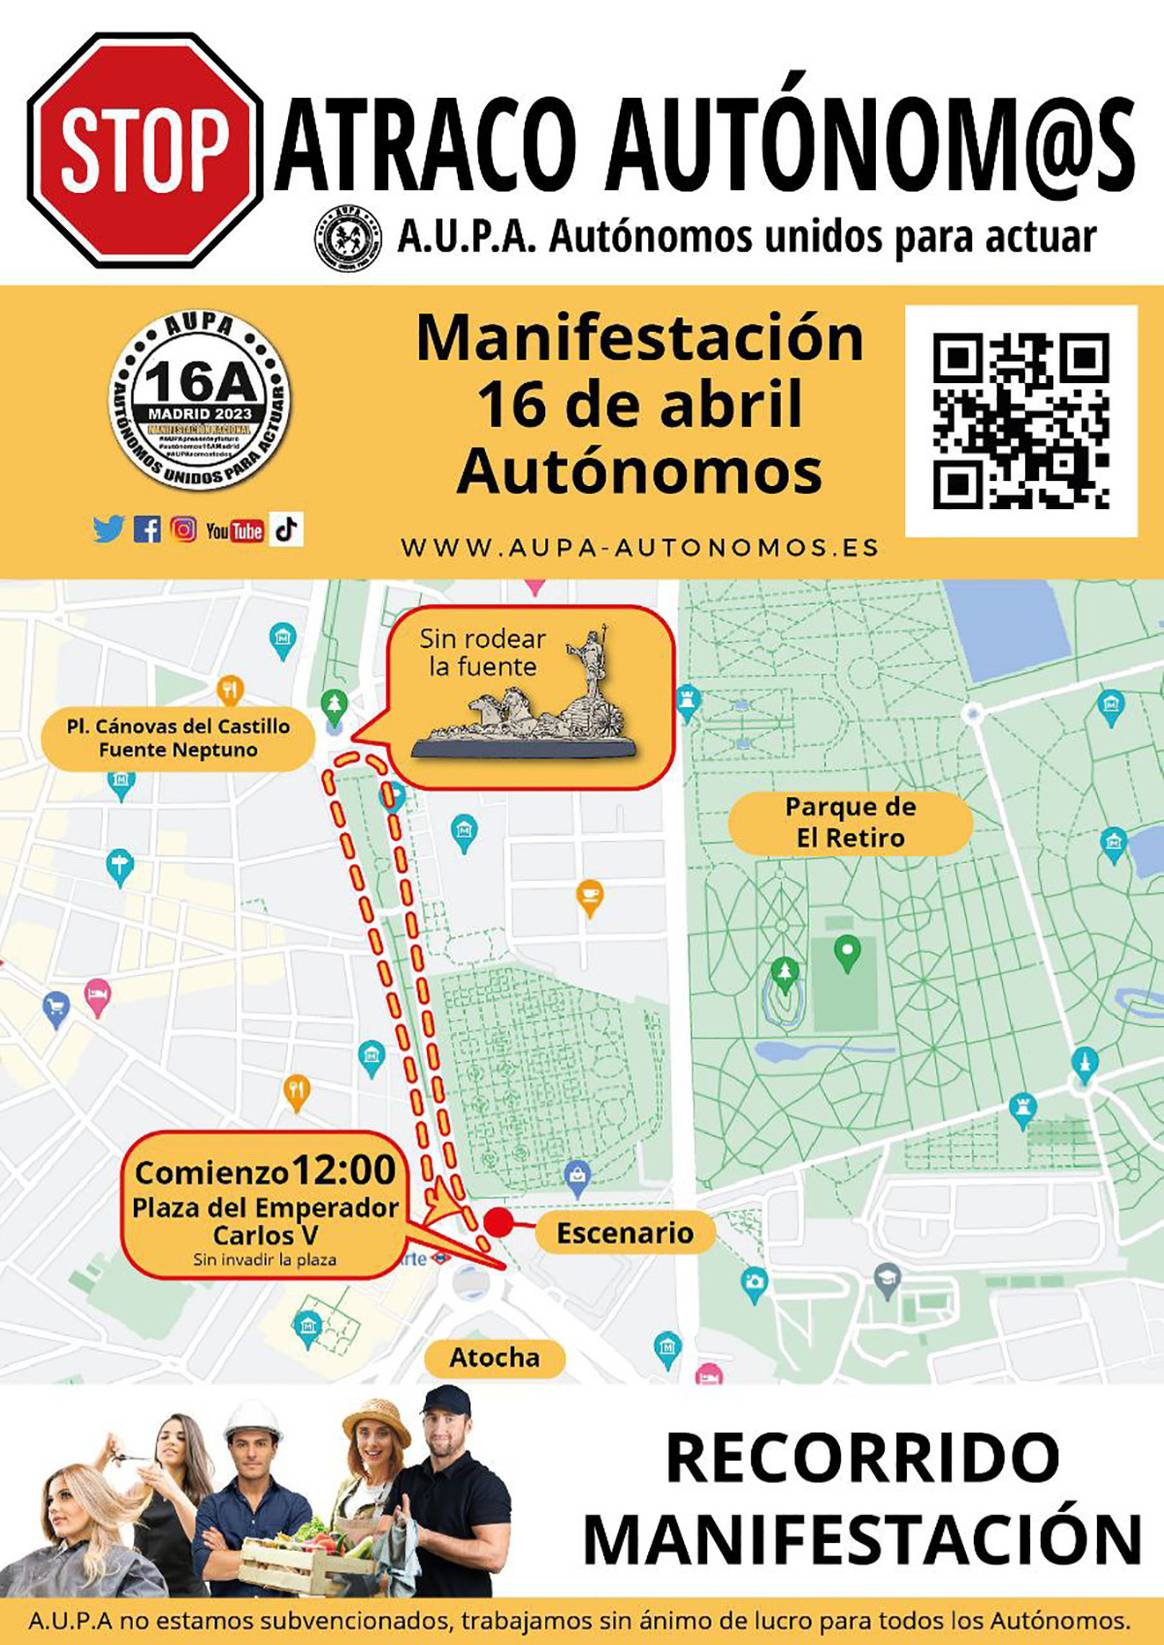 Photo Credits: Itinerario de la manifestación convocada por Aupa para el domingo 16 de abril en Madrid. Fotografía de cortesía.